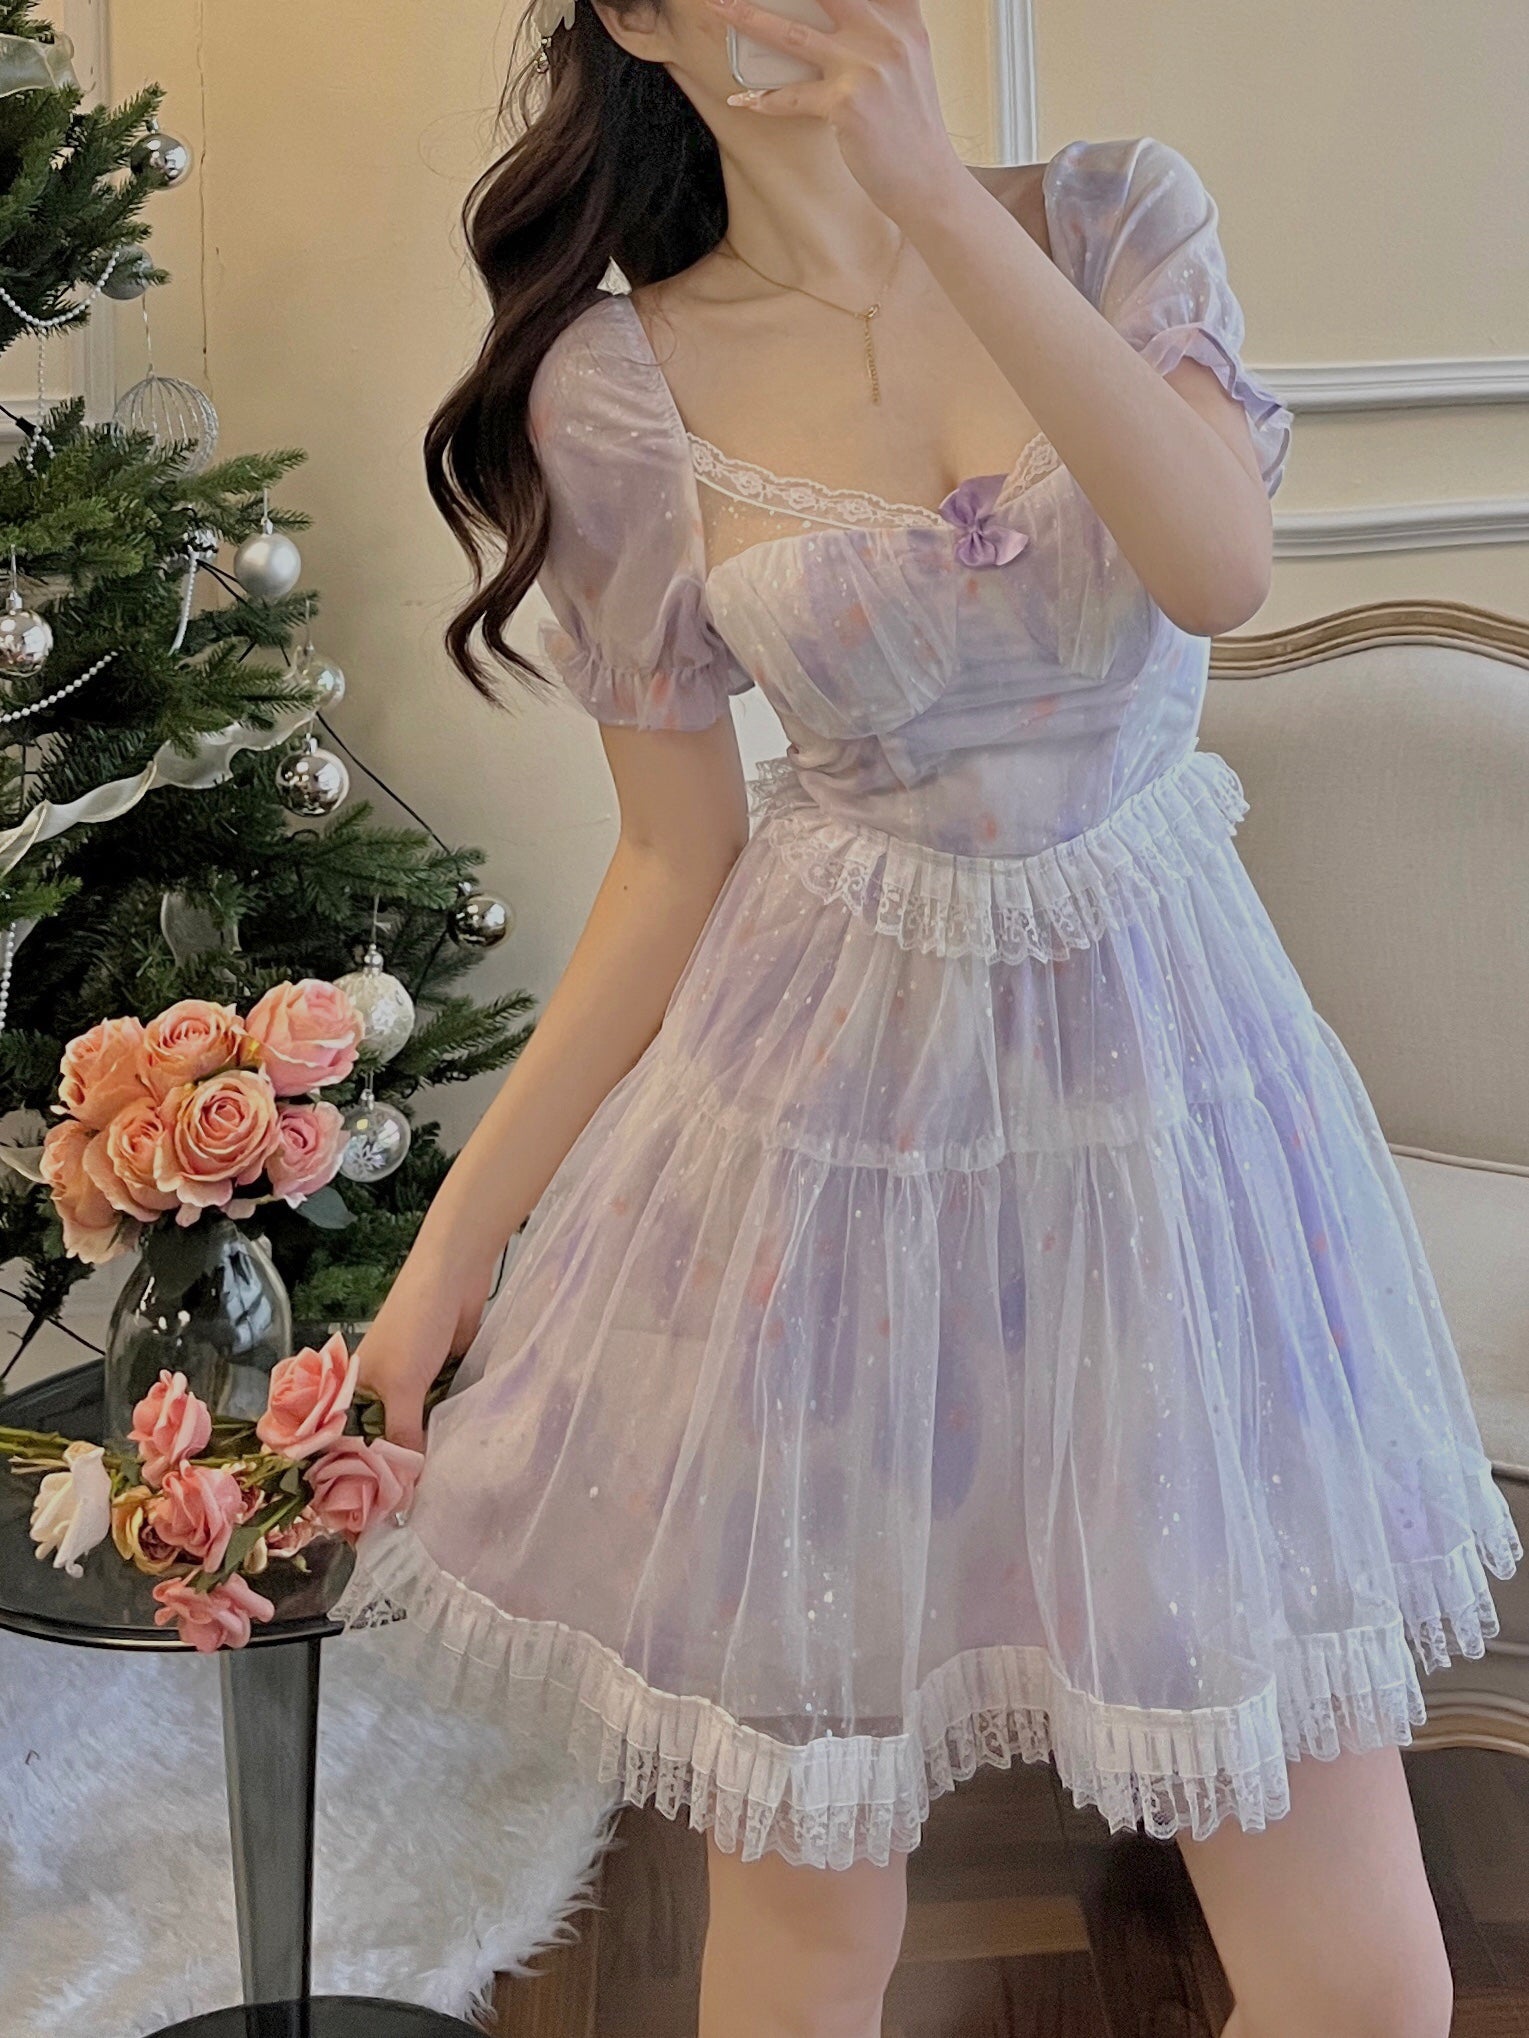 Pastel Bubble Princess Dress SP17454 - Harajuku Kawaii Fashion Anime Clothes Fashion Store - SpreePicky